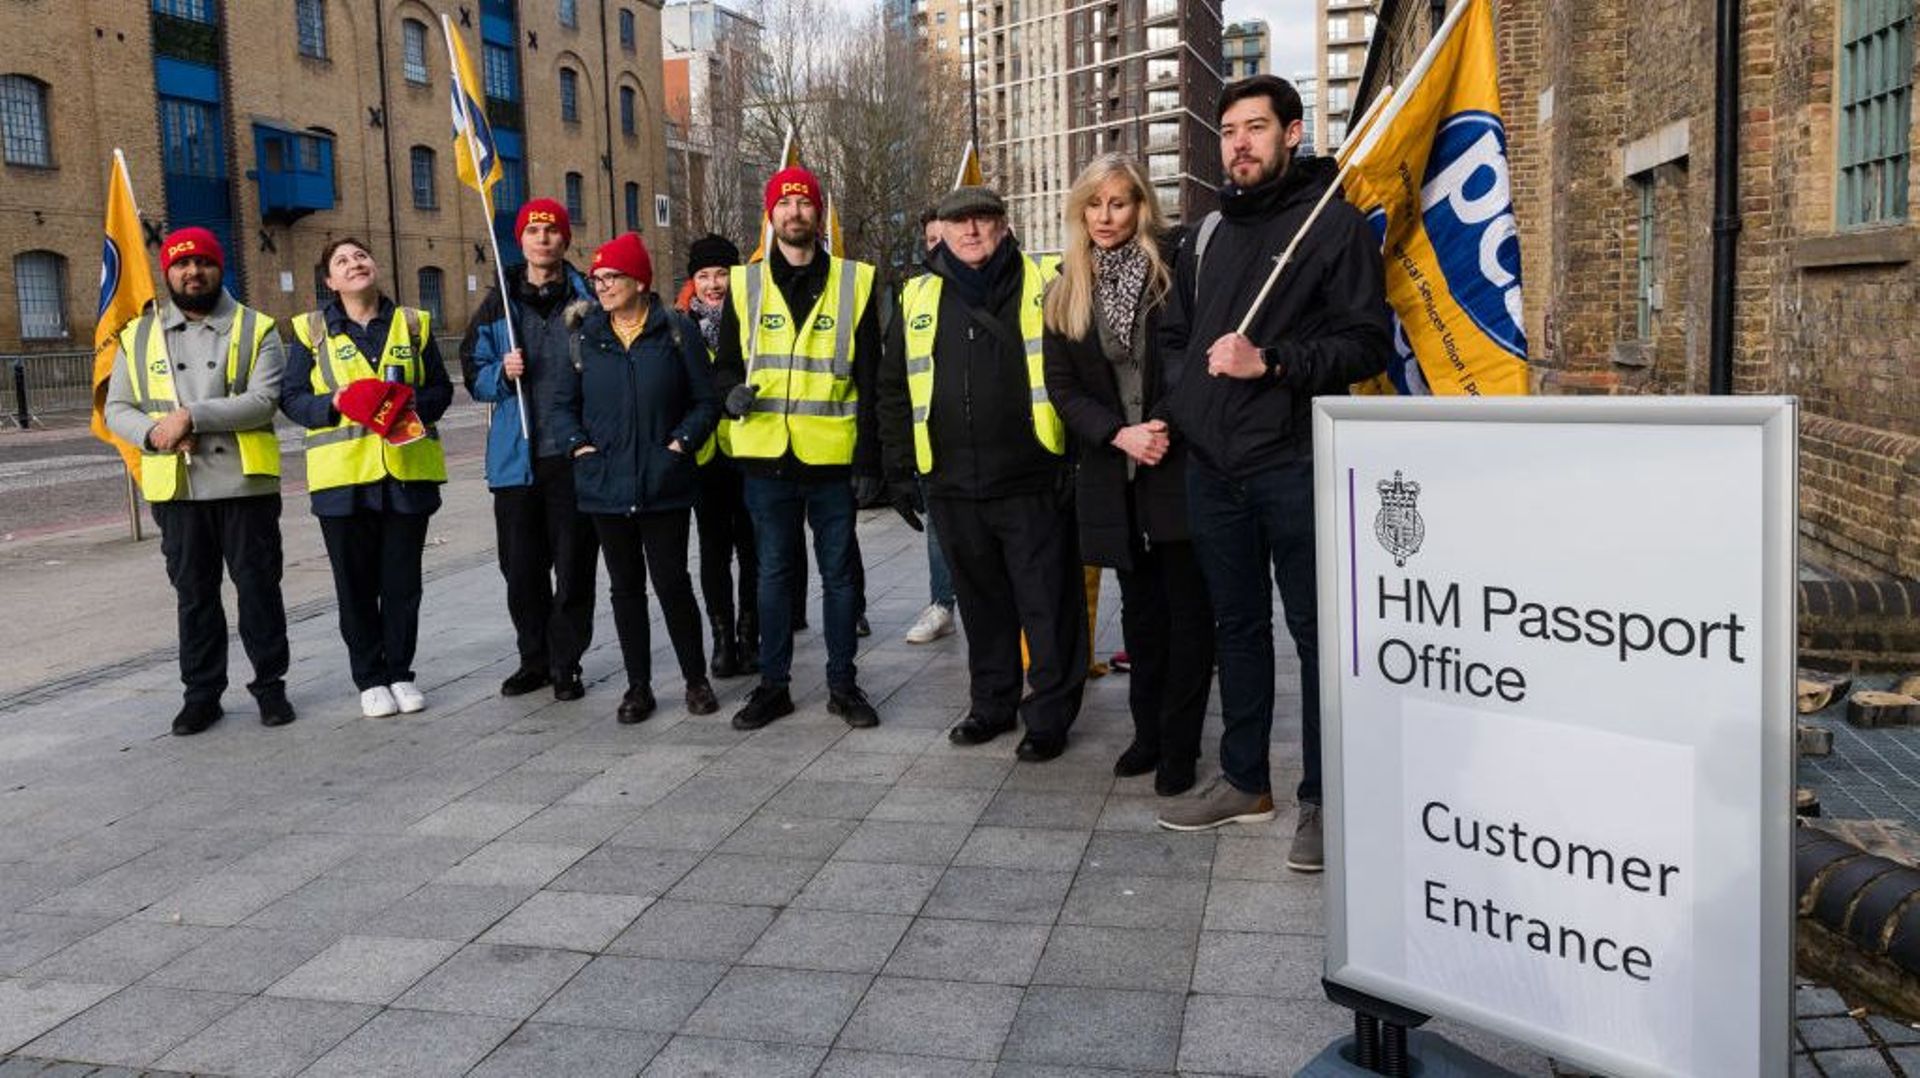 Passport Office Strike in London